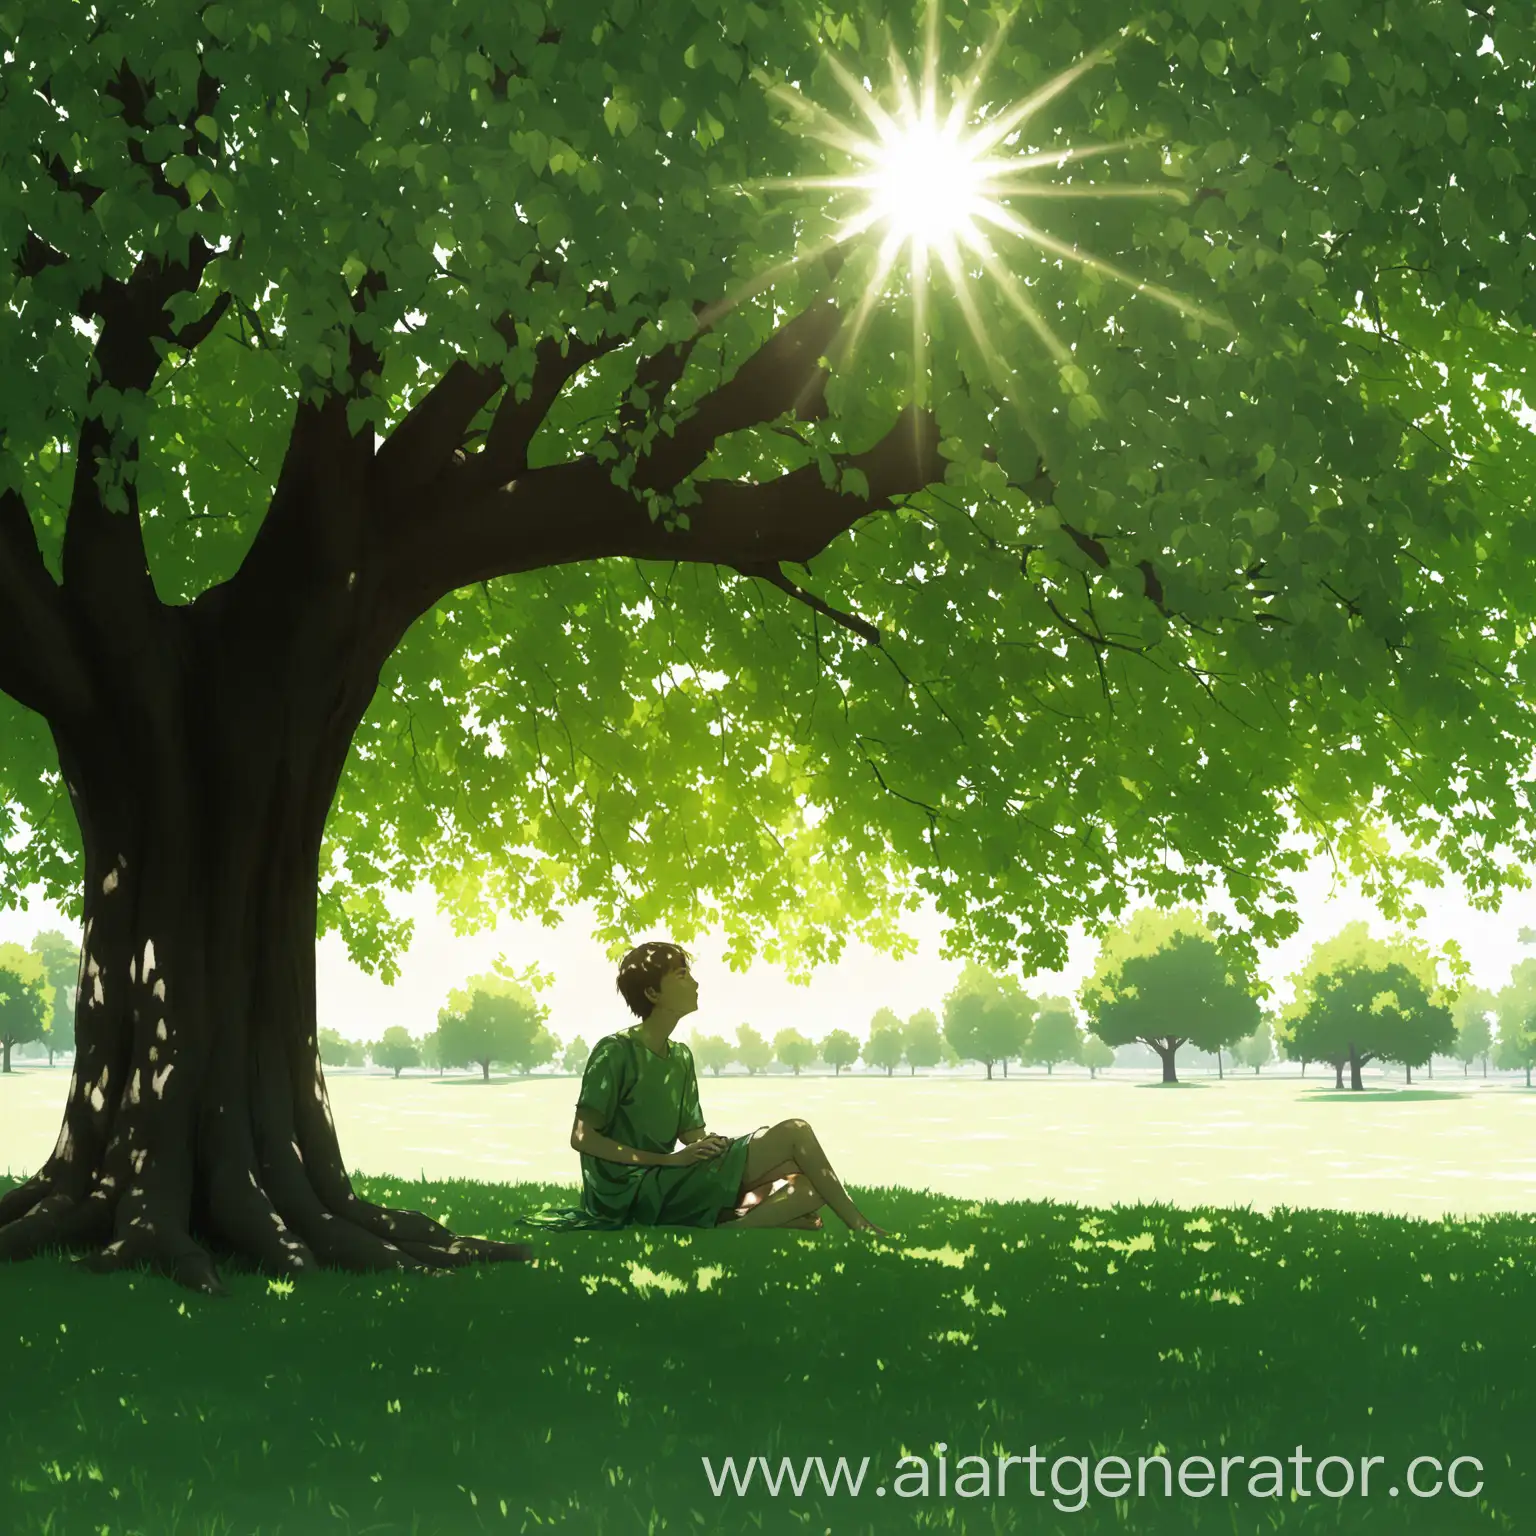 человек сидит под деревом, зелёный цвет, тень от дерева, солнце через листву дерева, зеленая трава